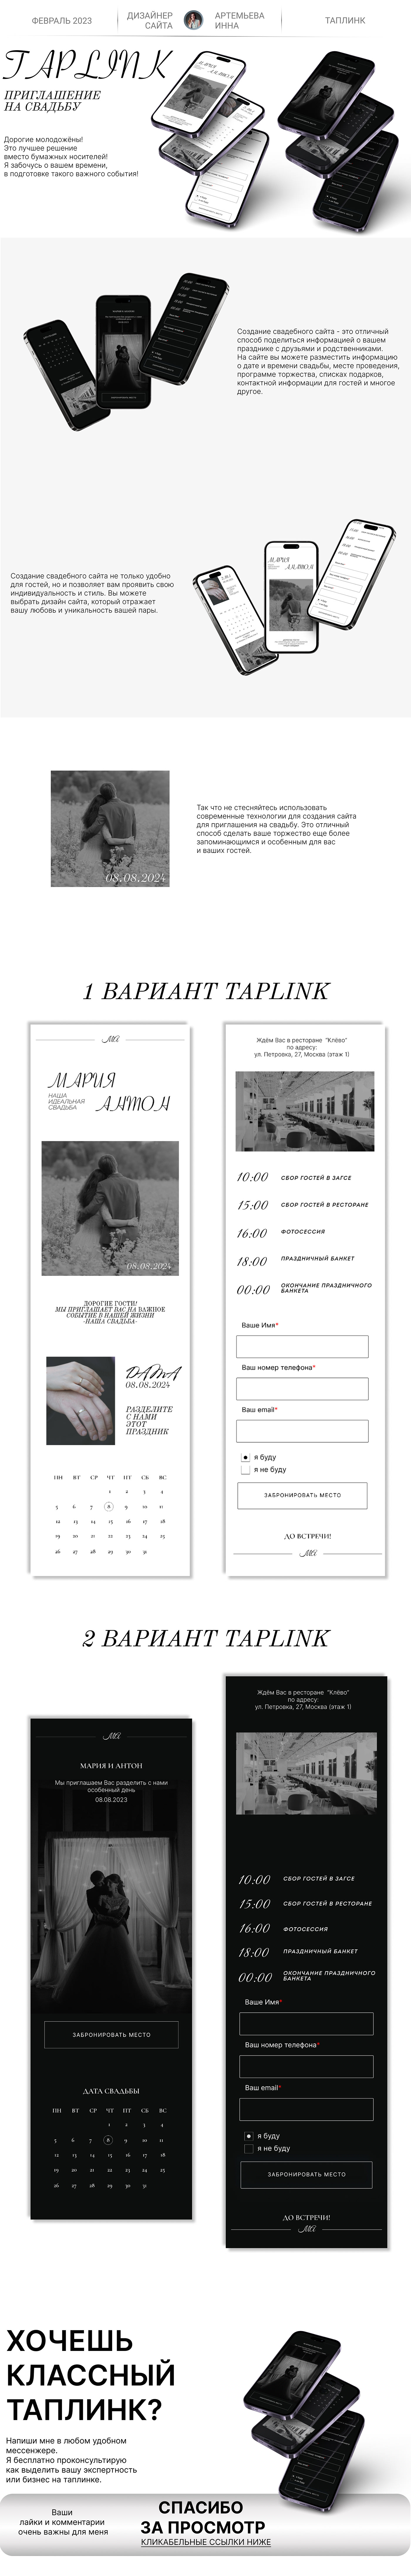 приглашение на свадьбу свадьба wedding card business brand identity Свадебные пригласительные открытки hand-made открытки хэнд мейд свадь